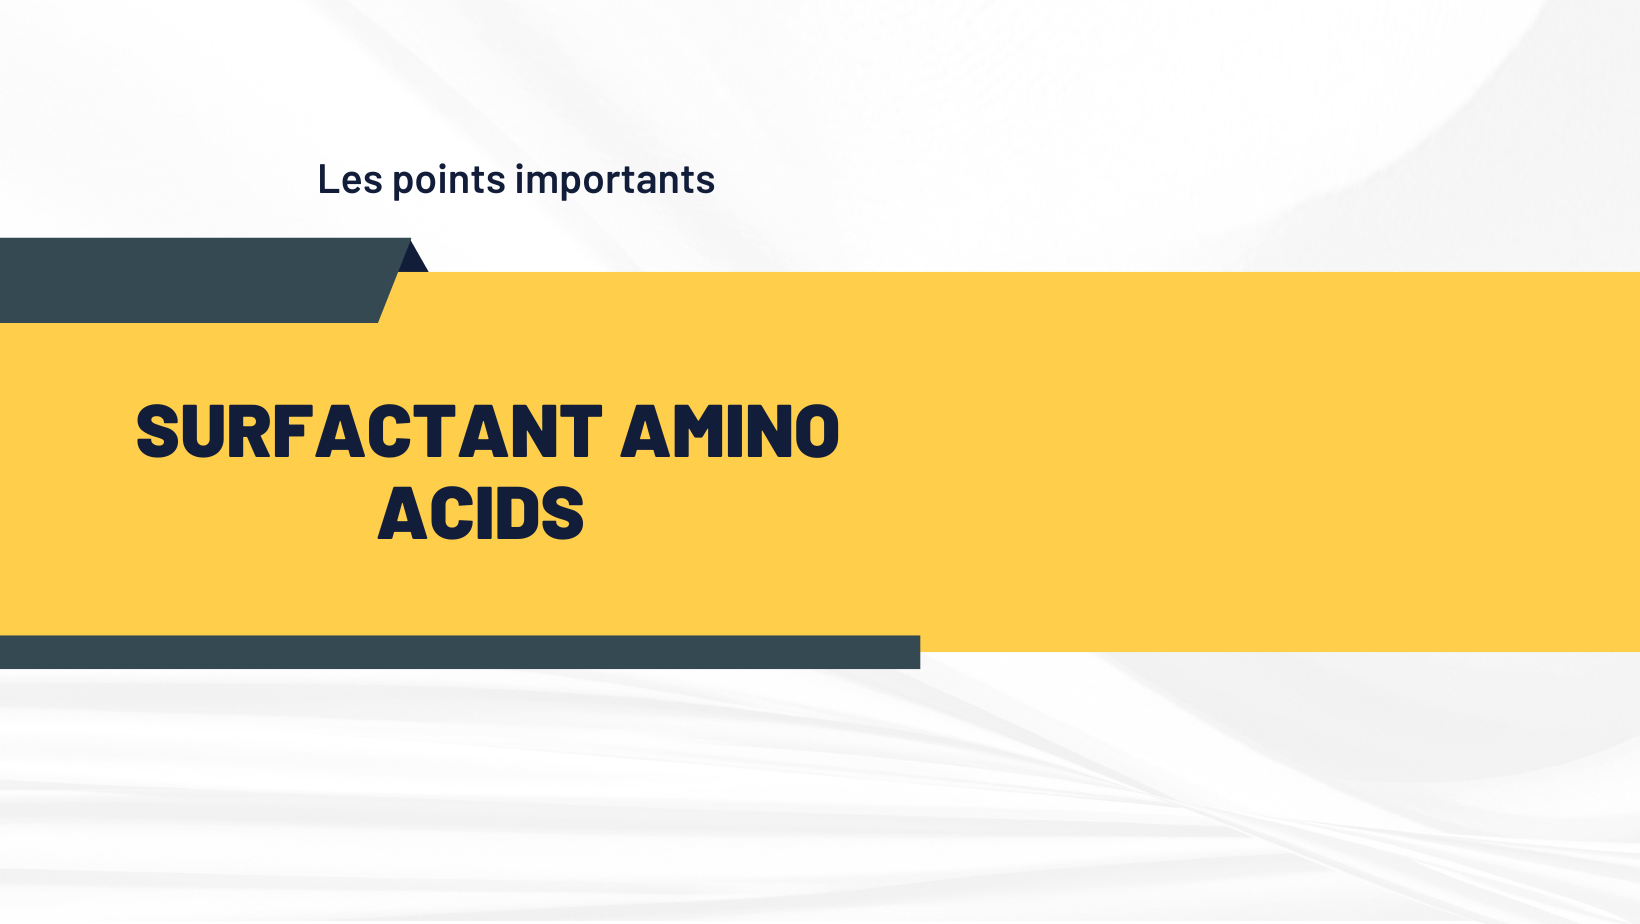 surfactant amino acids | Les points importants